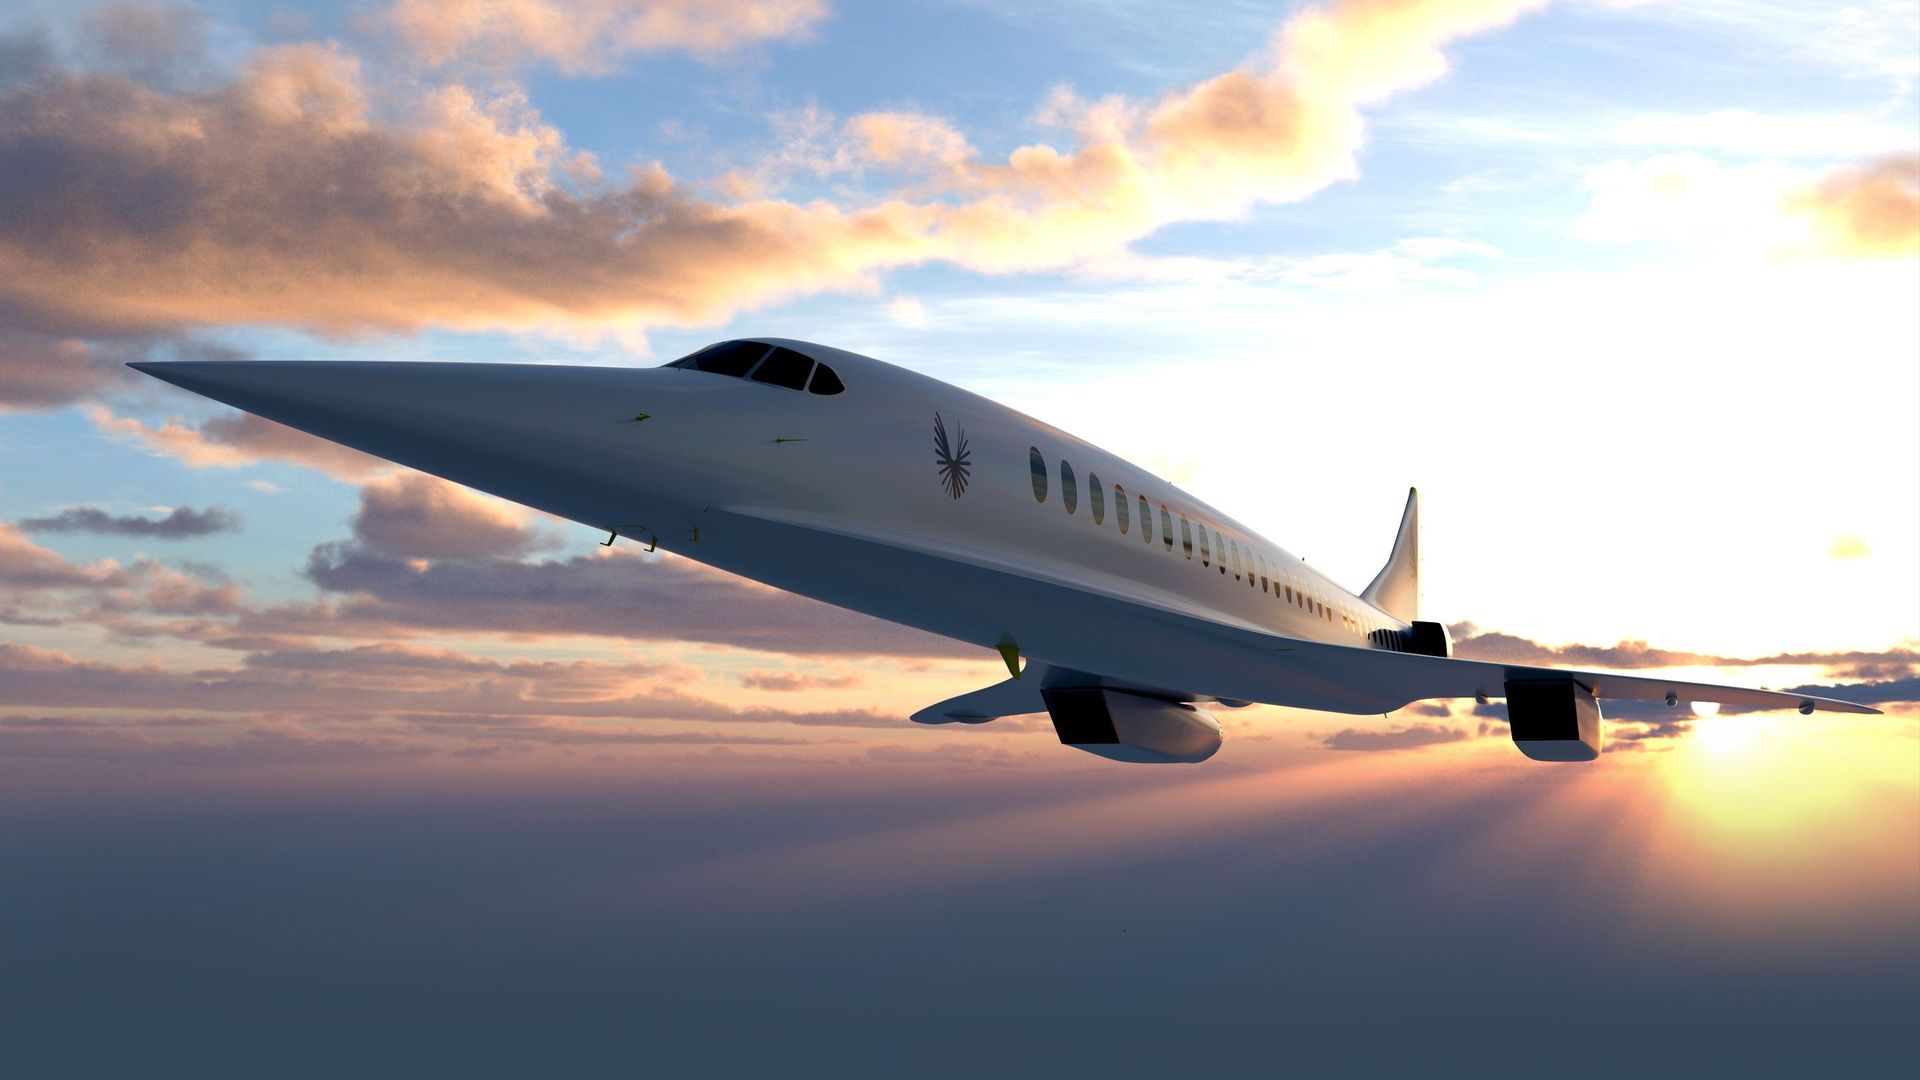 Des vols supersoniques 100% neutres en carbone d'ici 2030 ?